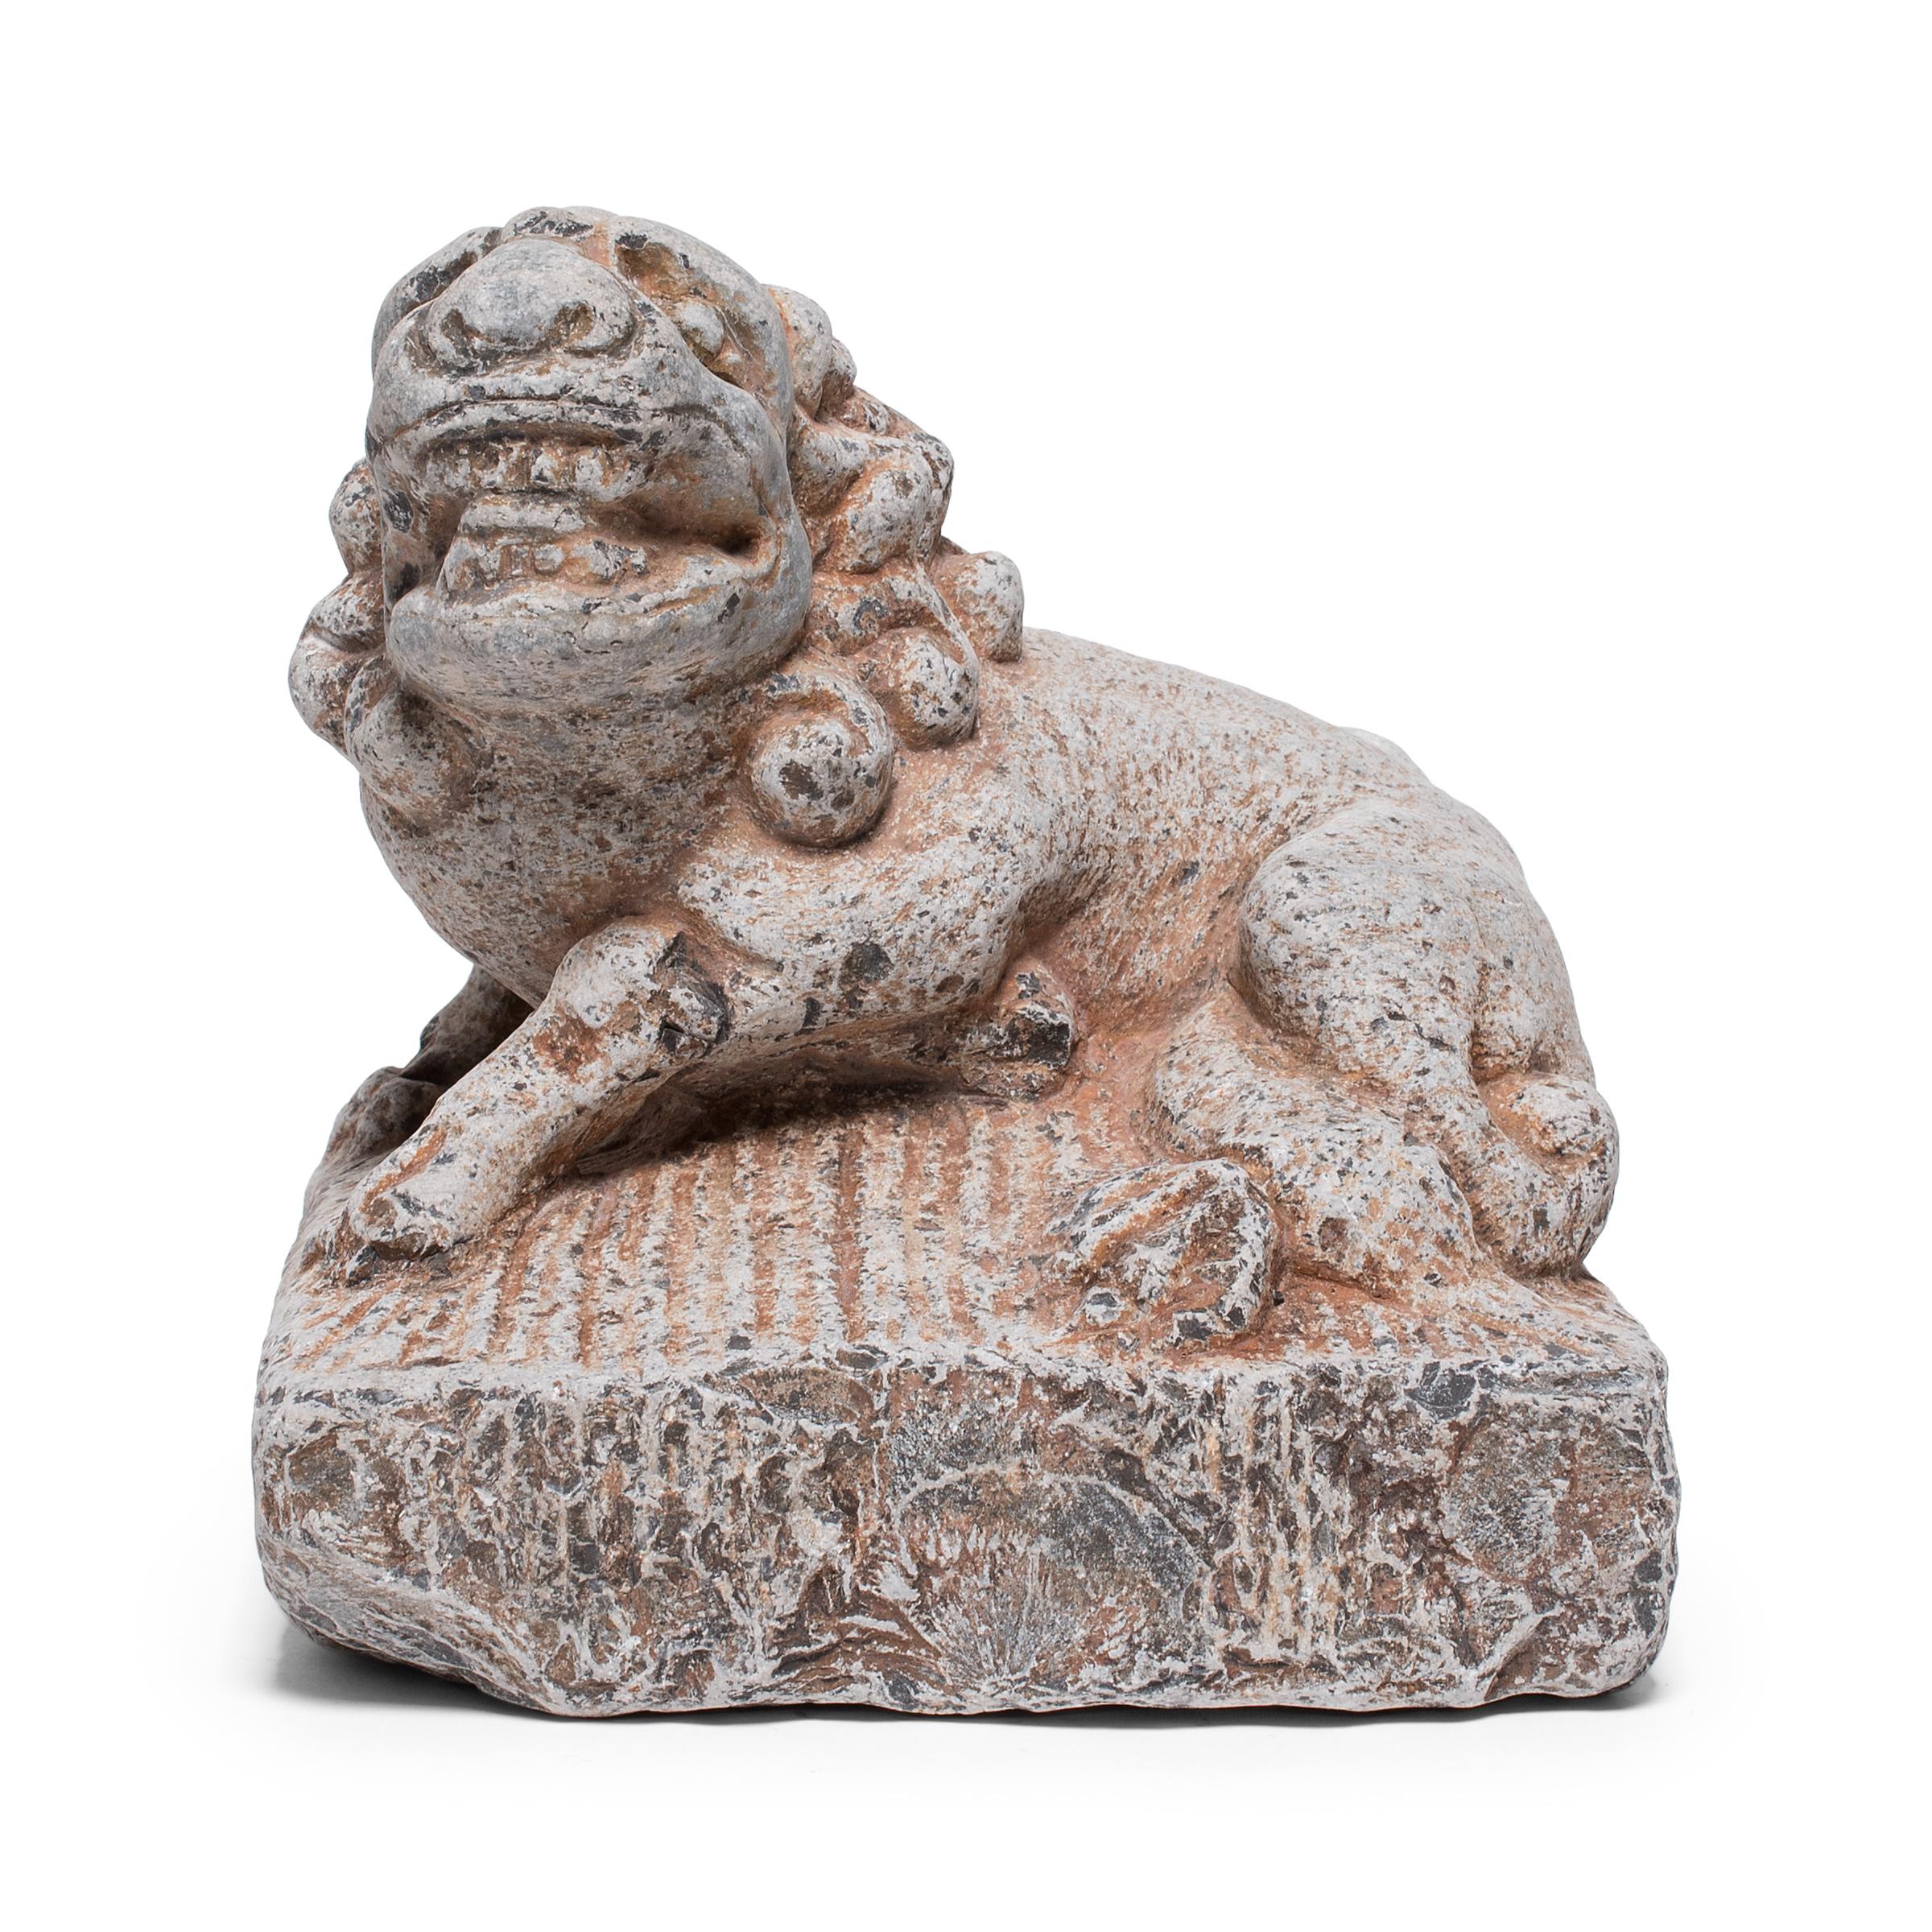 Sculptée à la main à partir d'un seul bloc de calcaire, cette sculpture en pierre représente un lion chien fu mythique couché. Également appelés shizi, les lions fu comme celui-ci étaient traditionnellement placés à côté de l'entrée ou du seuil